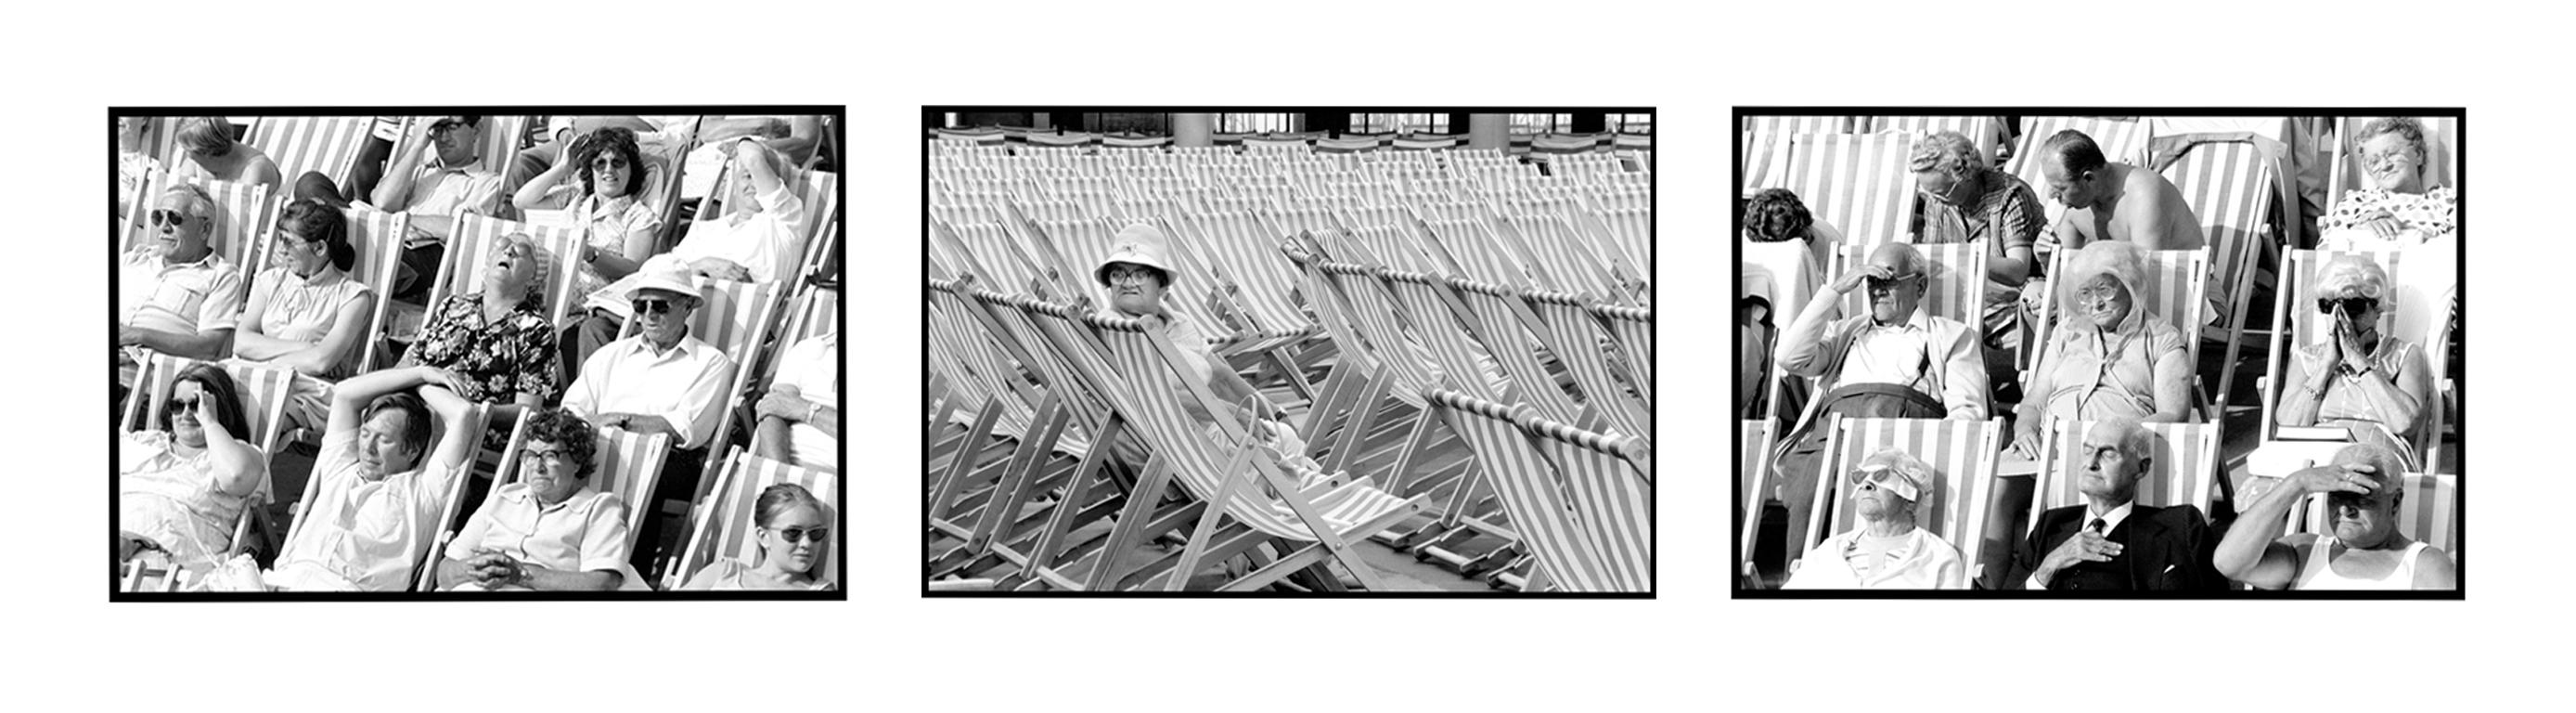 Bandstand I, Eastbourne, UK - Black and White Vintage Photography 4